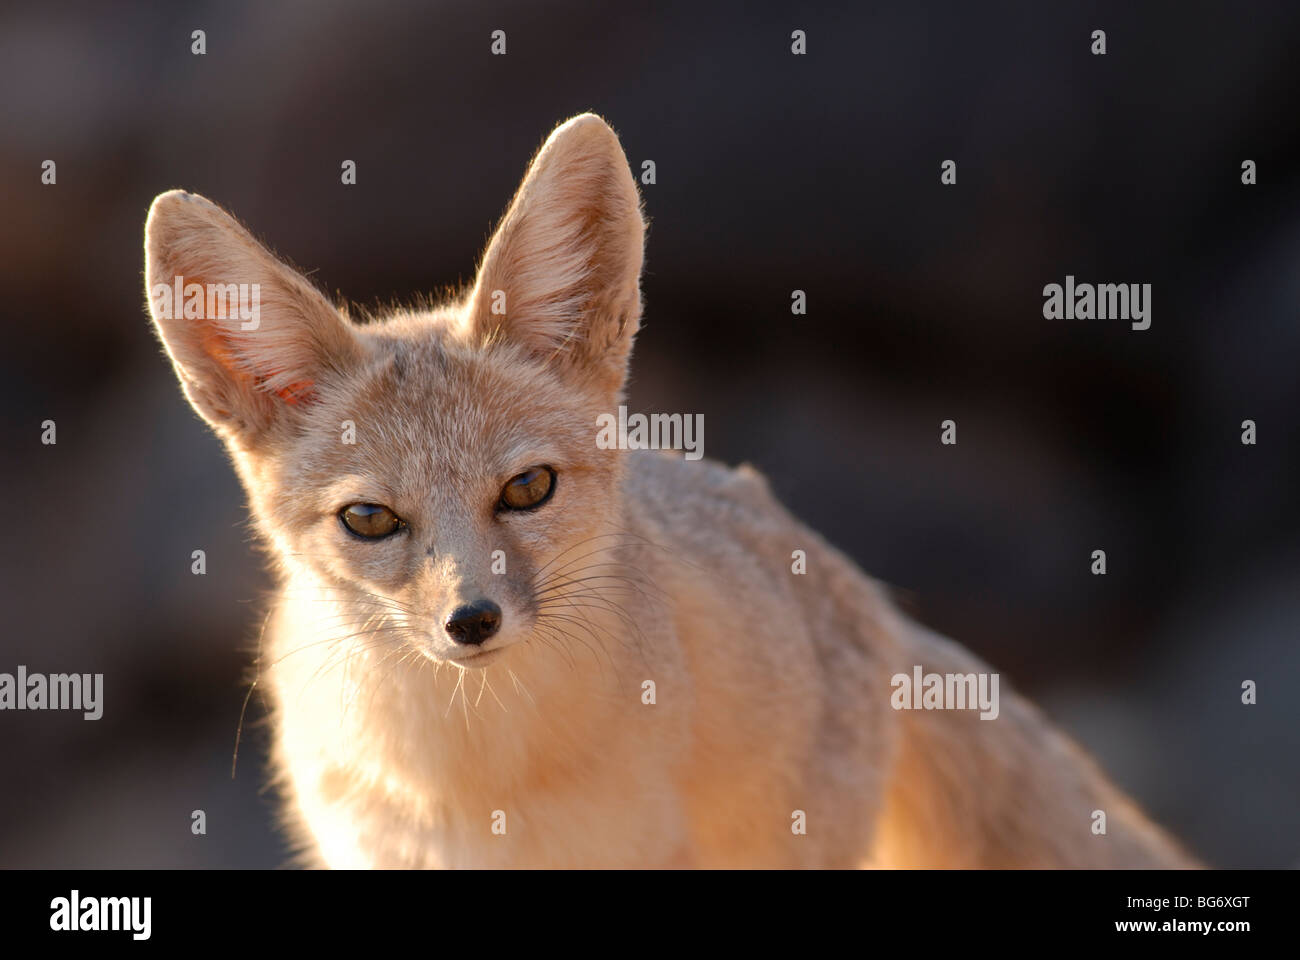 Stock photo of a kit fox in golden light, southwestern Utah. Stock Photo